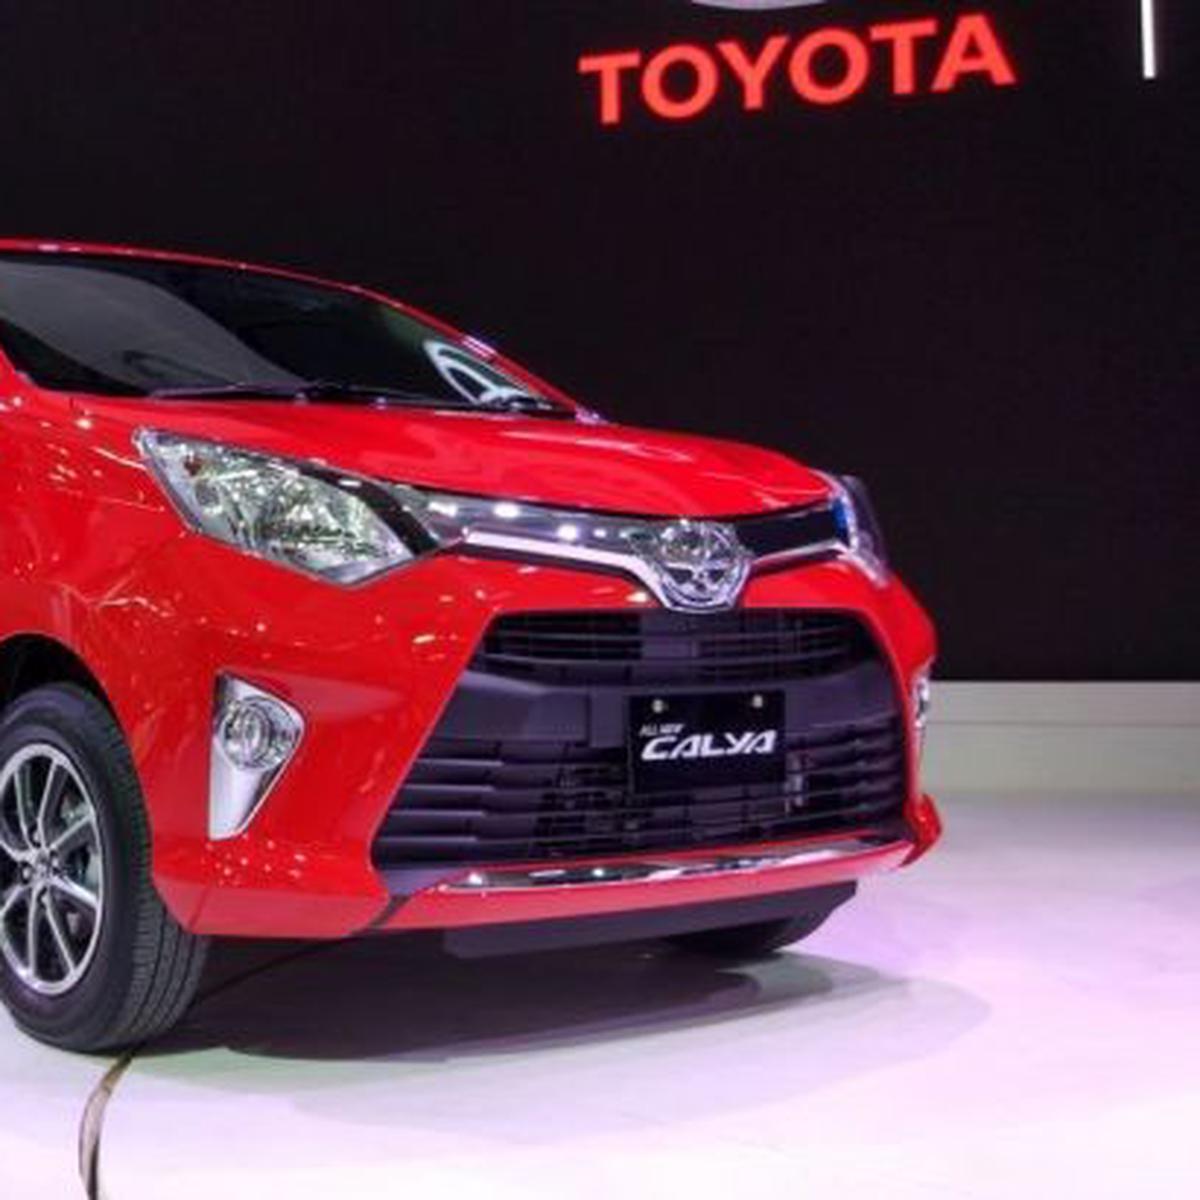 Harga Toyota Calya Terbaru Dan Terbaik 2018